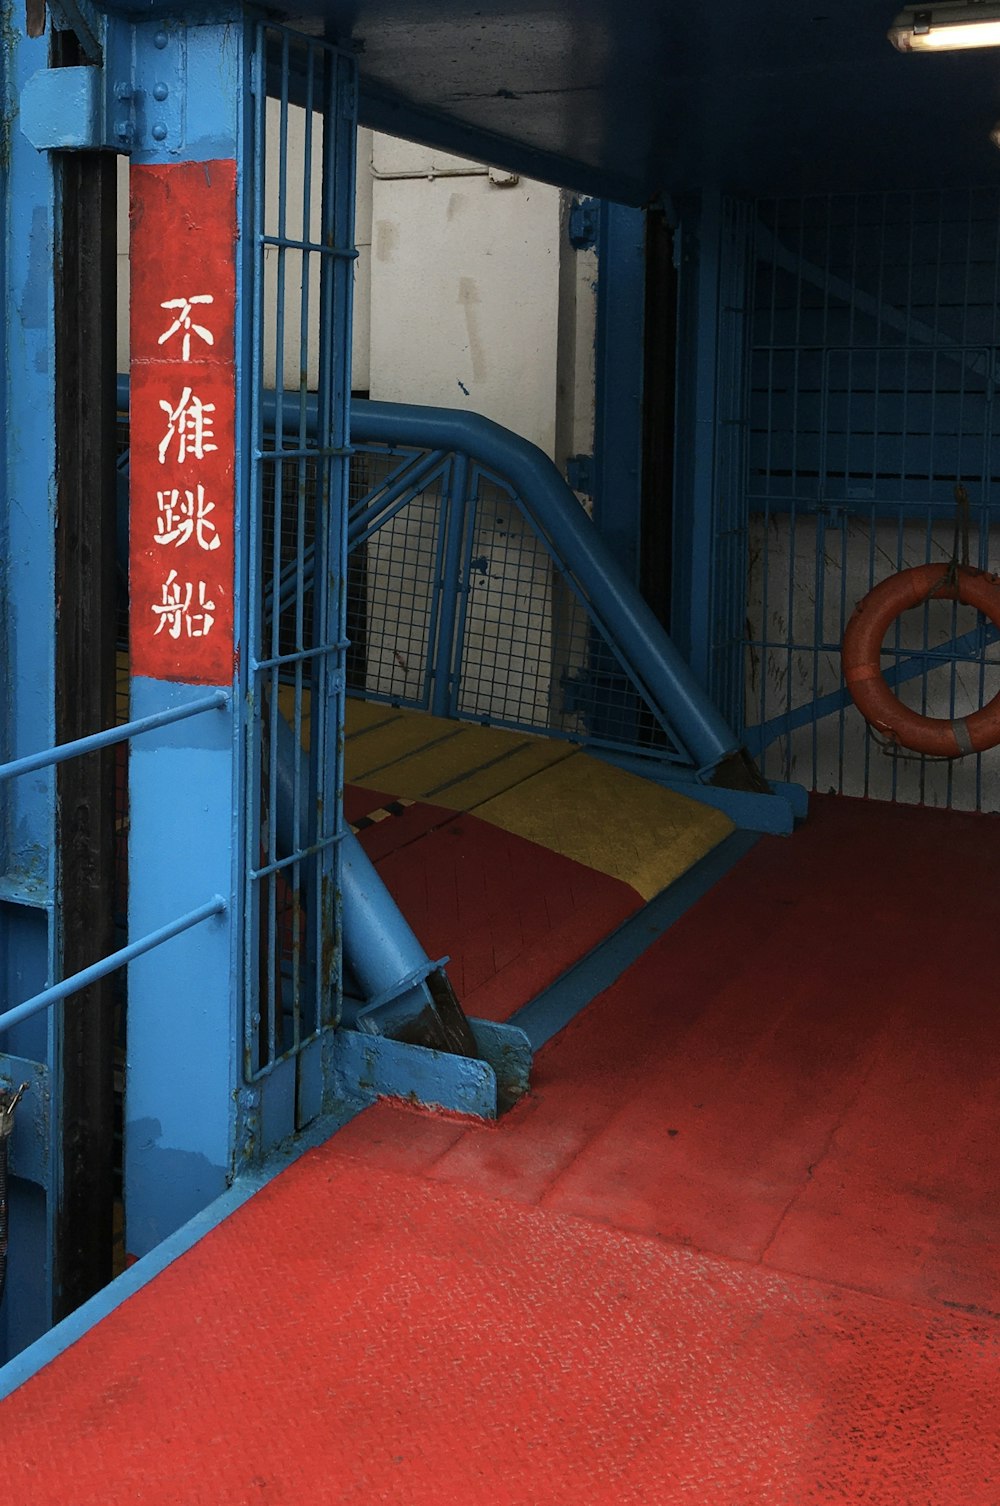 Escalera de metal azul sobre piso rojo